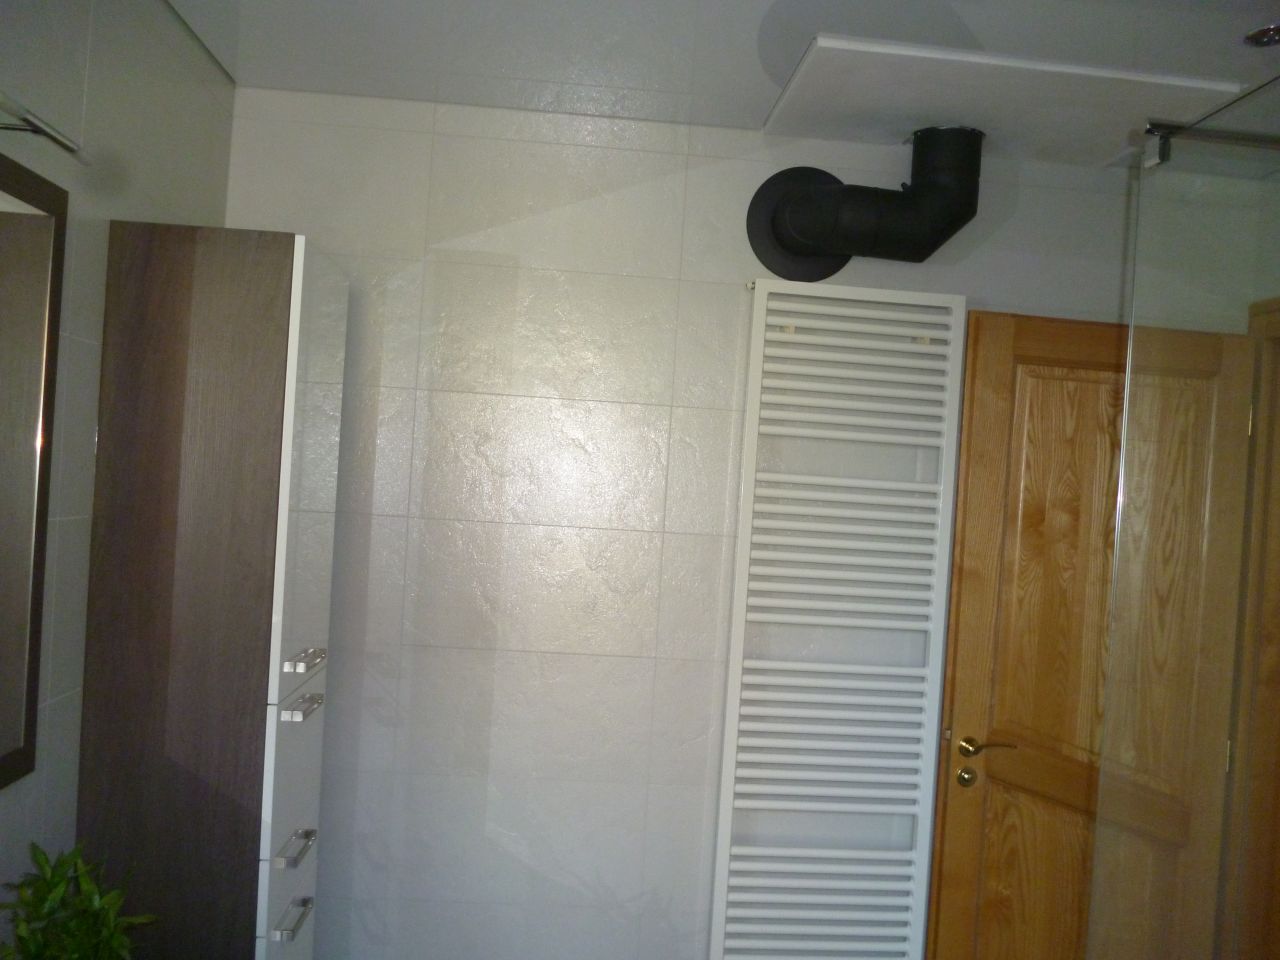 Rnovation salle de bains termine: vue du sche-serviettes et du conduit du pole  bois